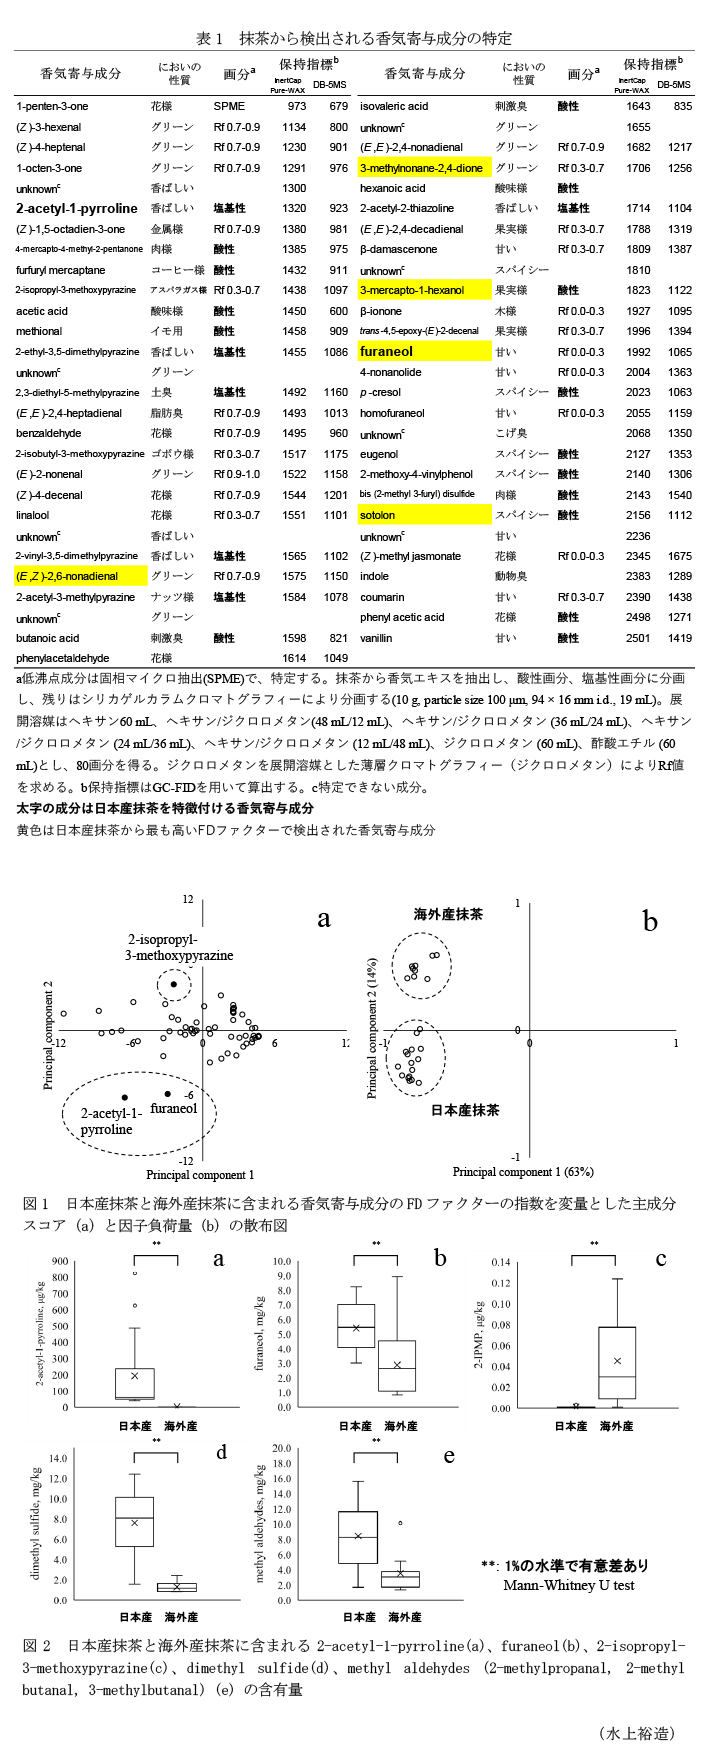 表1 抹茶から検出される香気寄与成分の特定,図1 日本産抹茶と海外産抹茶に含まれる香気寄与成分のFDファクターの指数を変量とした主成分スコア(a)と因子負荷量(b)の散布図,図2 日本産抹茶と海外産抹茶に含まれる2-acetyl-1-pyrroline(a)、furaneol(b)、2-isopropyl-3-methoxypyrazine(c)、dimethyl sulfide(d)、methyl aldehydes (2-methylpropanal, 2-methyl butanal, 3-methylbutanal) (e) の含有量